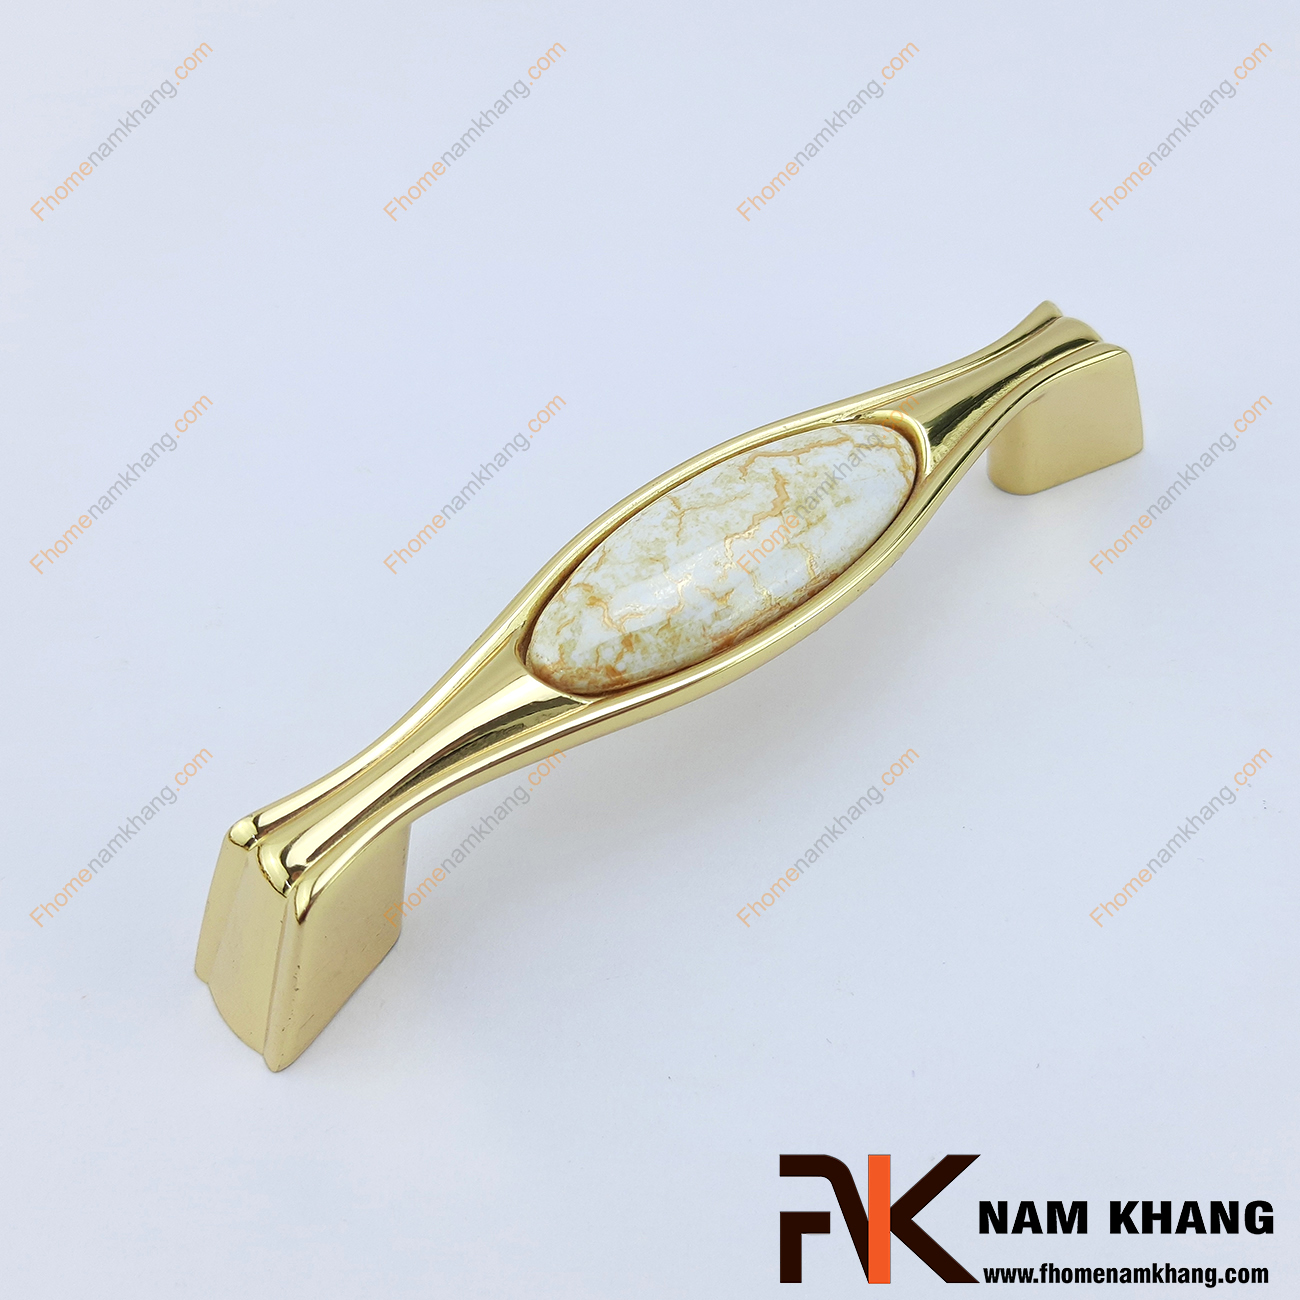 Tay nắm cửa tủ bếp sứ vân vàng mạ vàng NK038-VV là một sản phẩm đặc trung có độ thẩm mỹ cao khi kết hợp giữa sứ vân cao cấp và hợp kim chất lượng cao mạ vàng bóng.